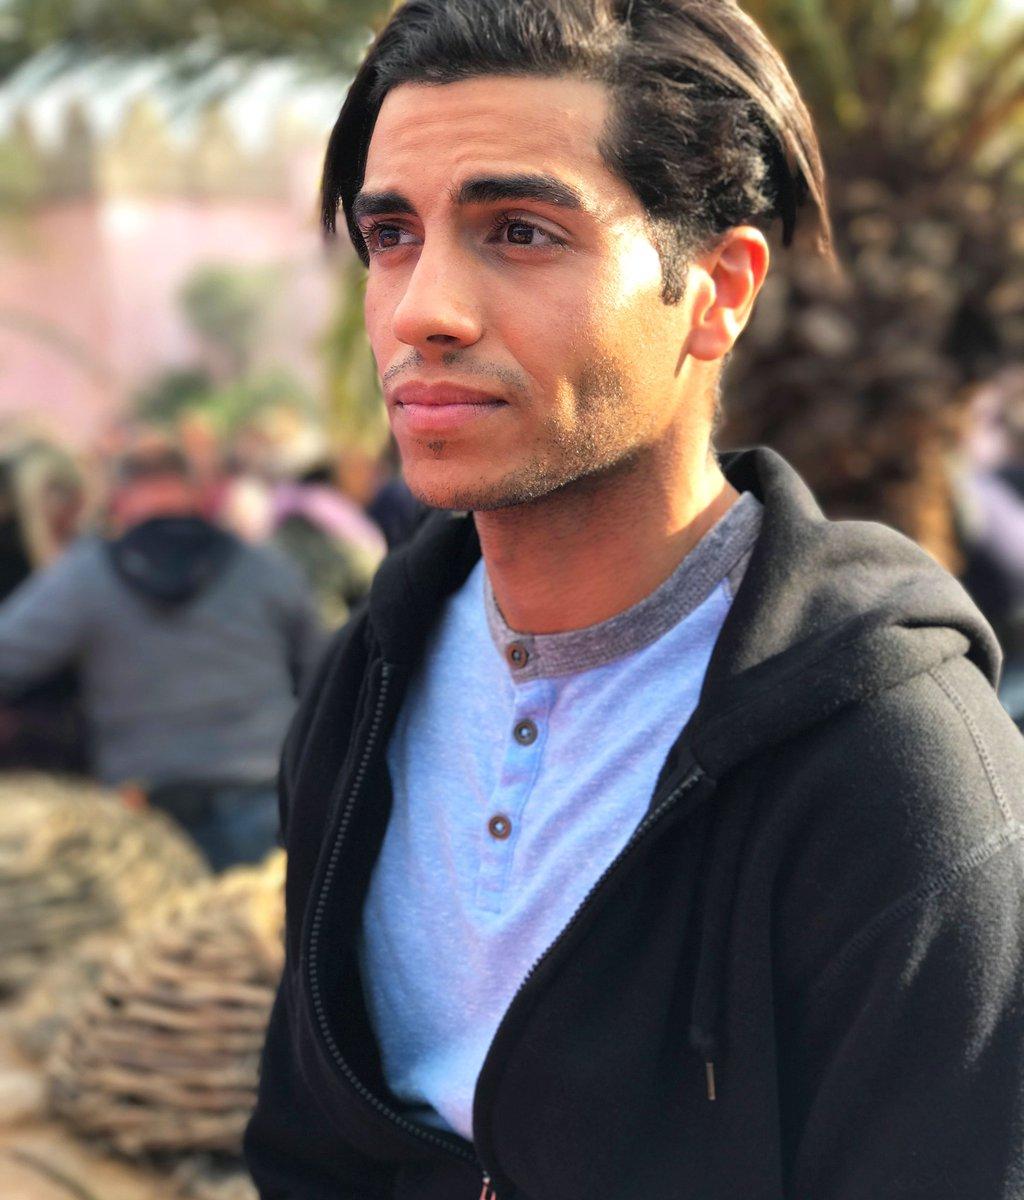 Aladdin (2019) image Mena Massoud HD wallpaper and background